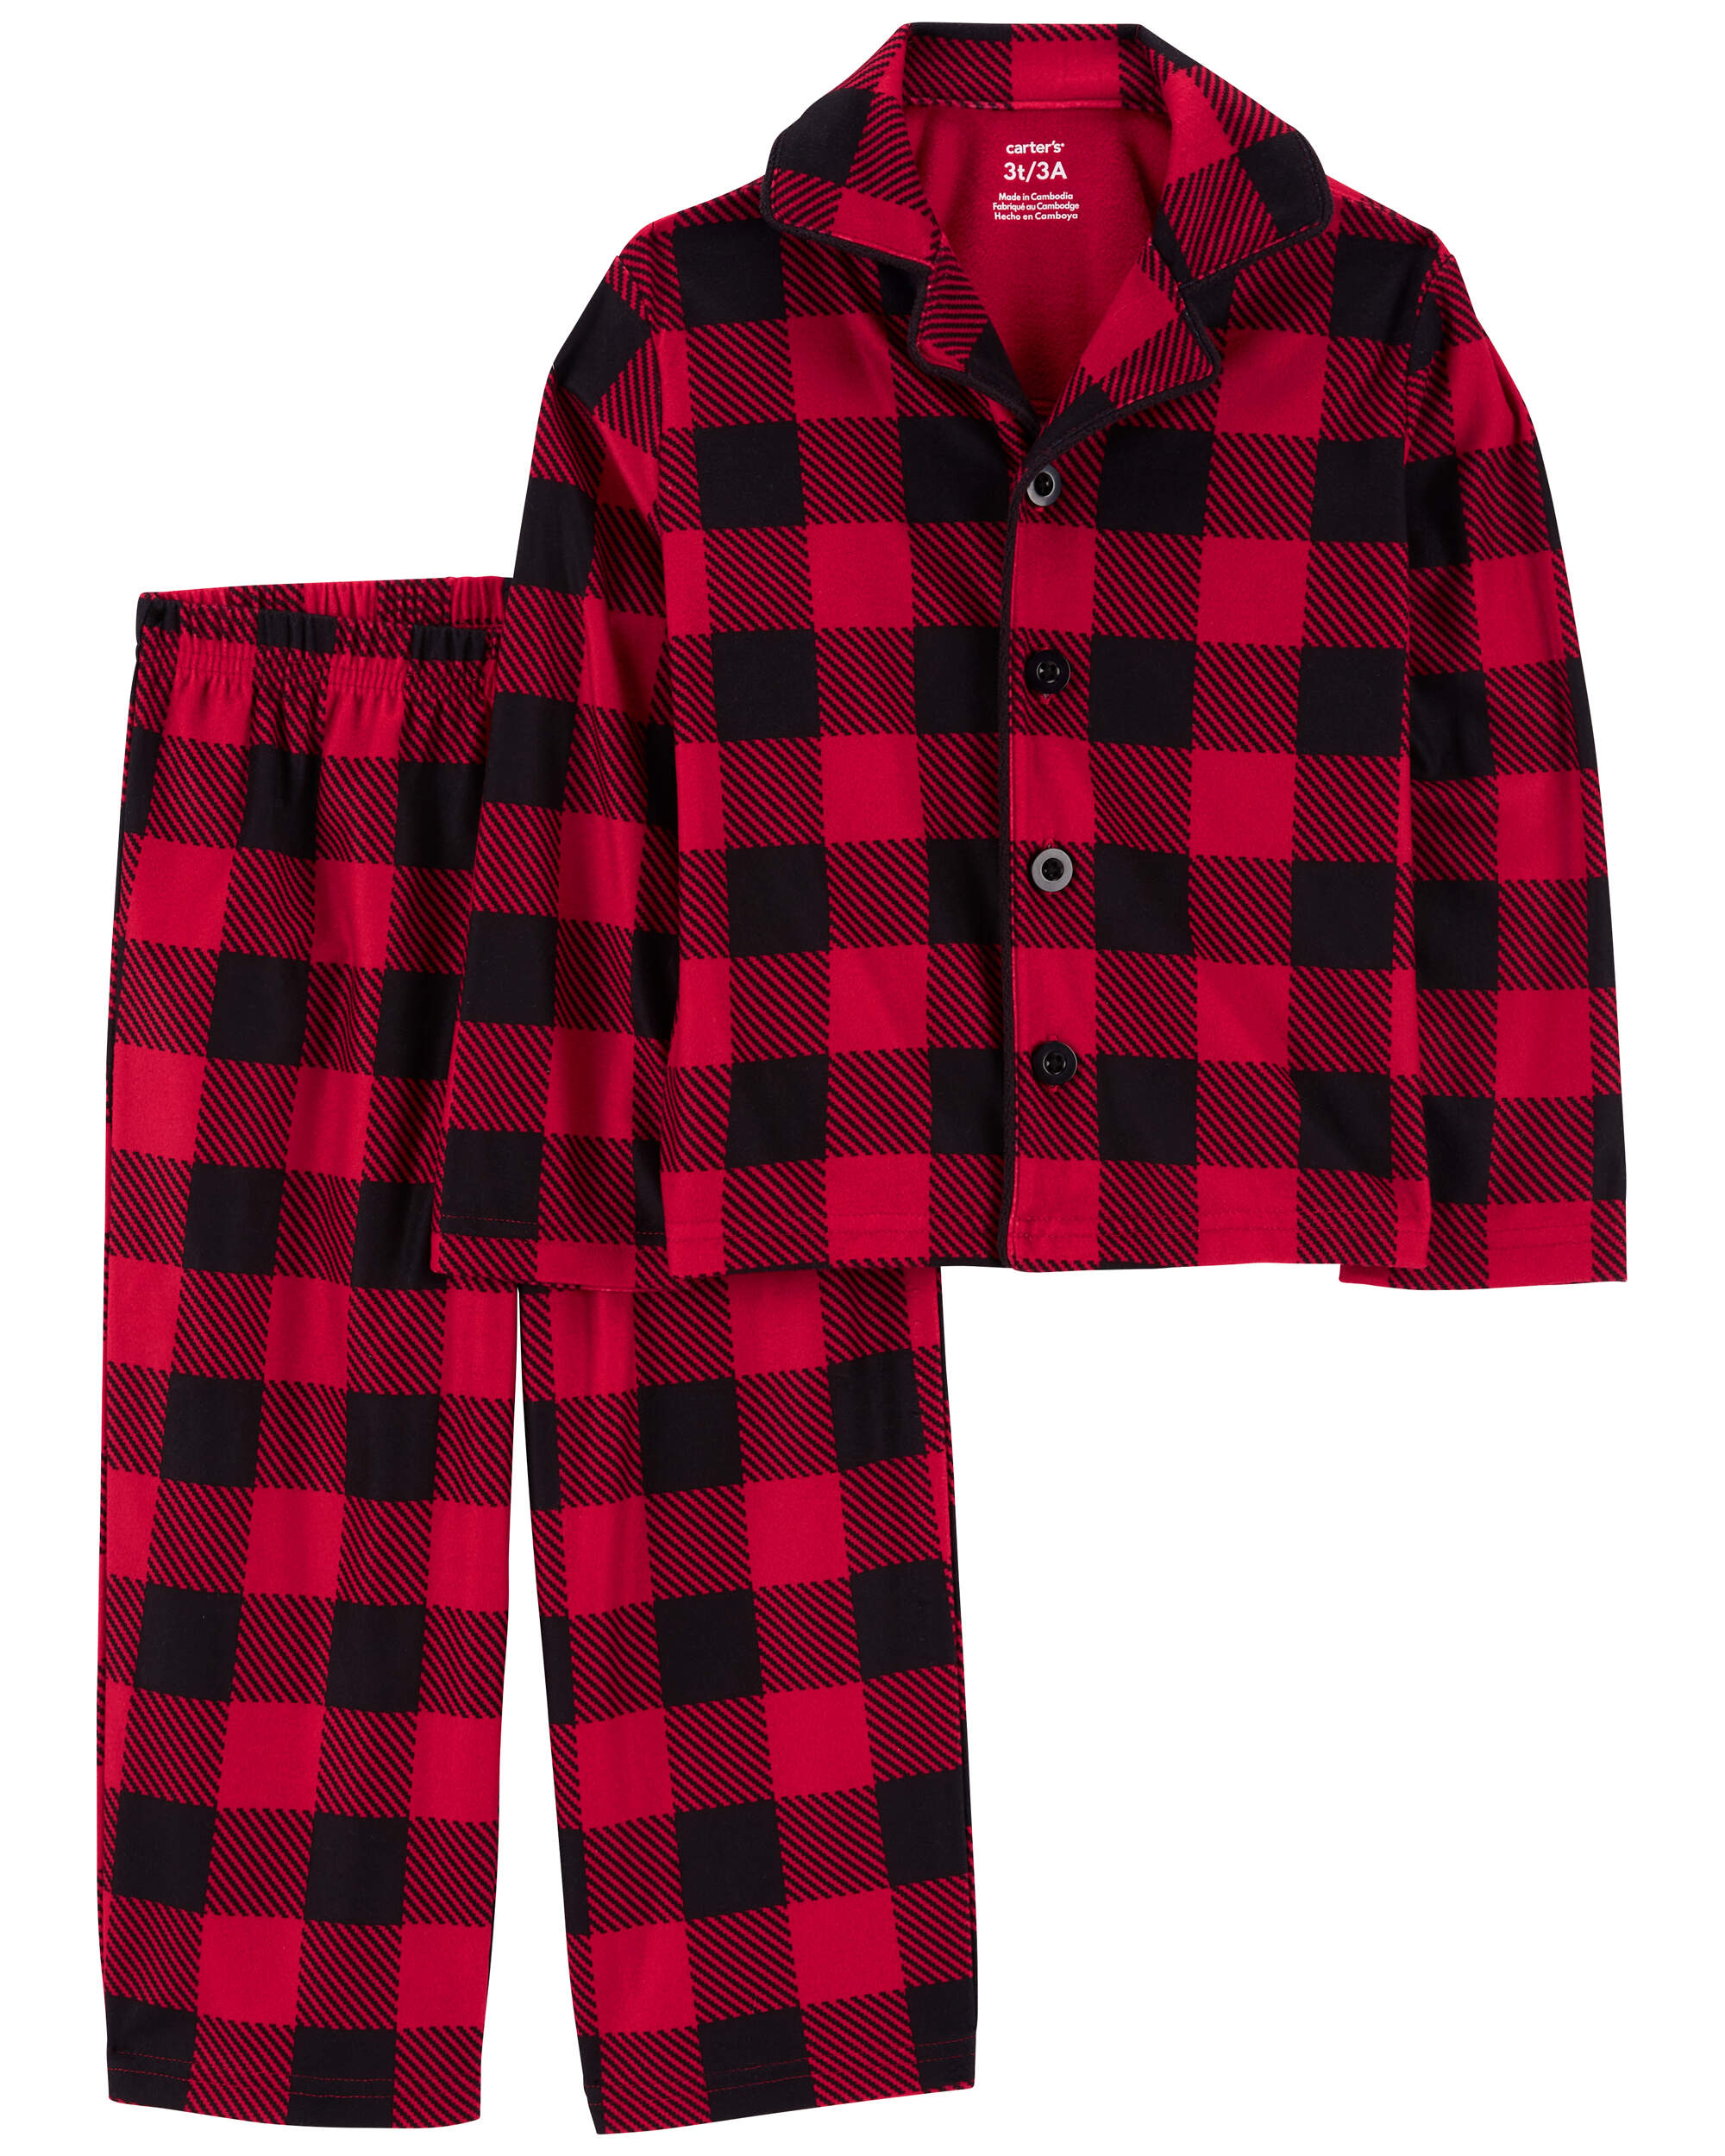 Toddler 2-Piece Buffalo Check Coat Style Fleece Pyjamas